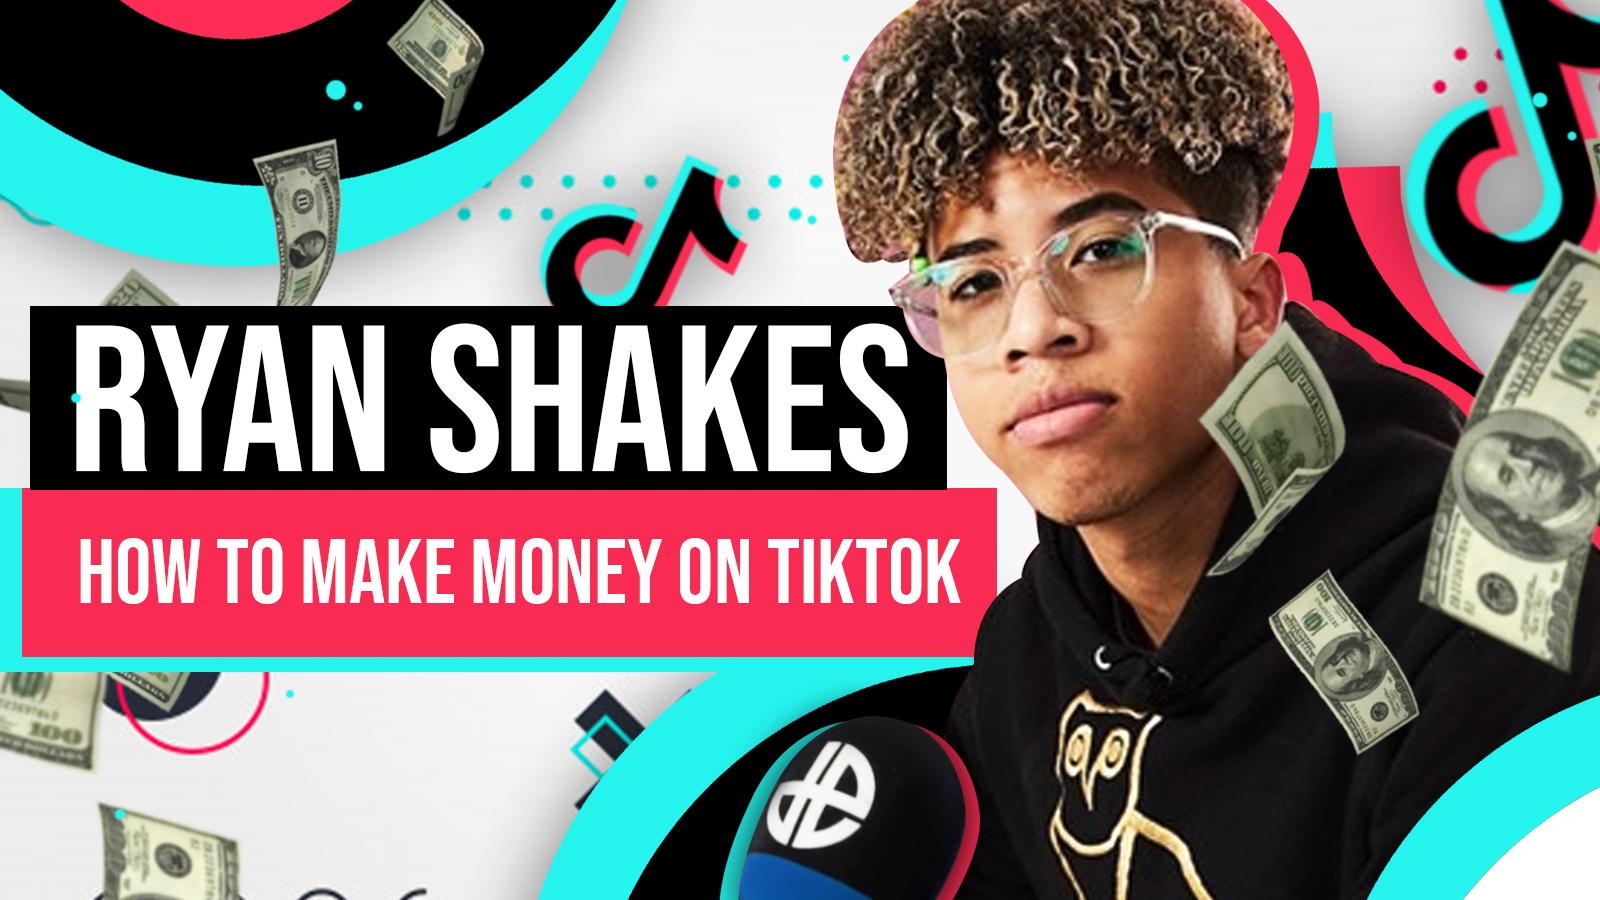 Interview: Ryan Shakes reveals 4 ways to make money on TikTok - Dexerto